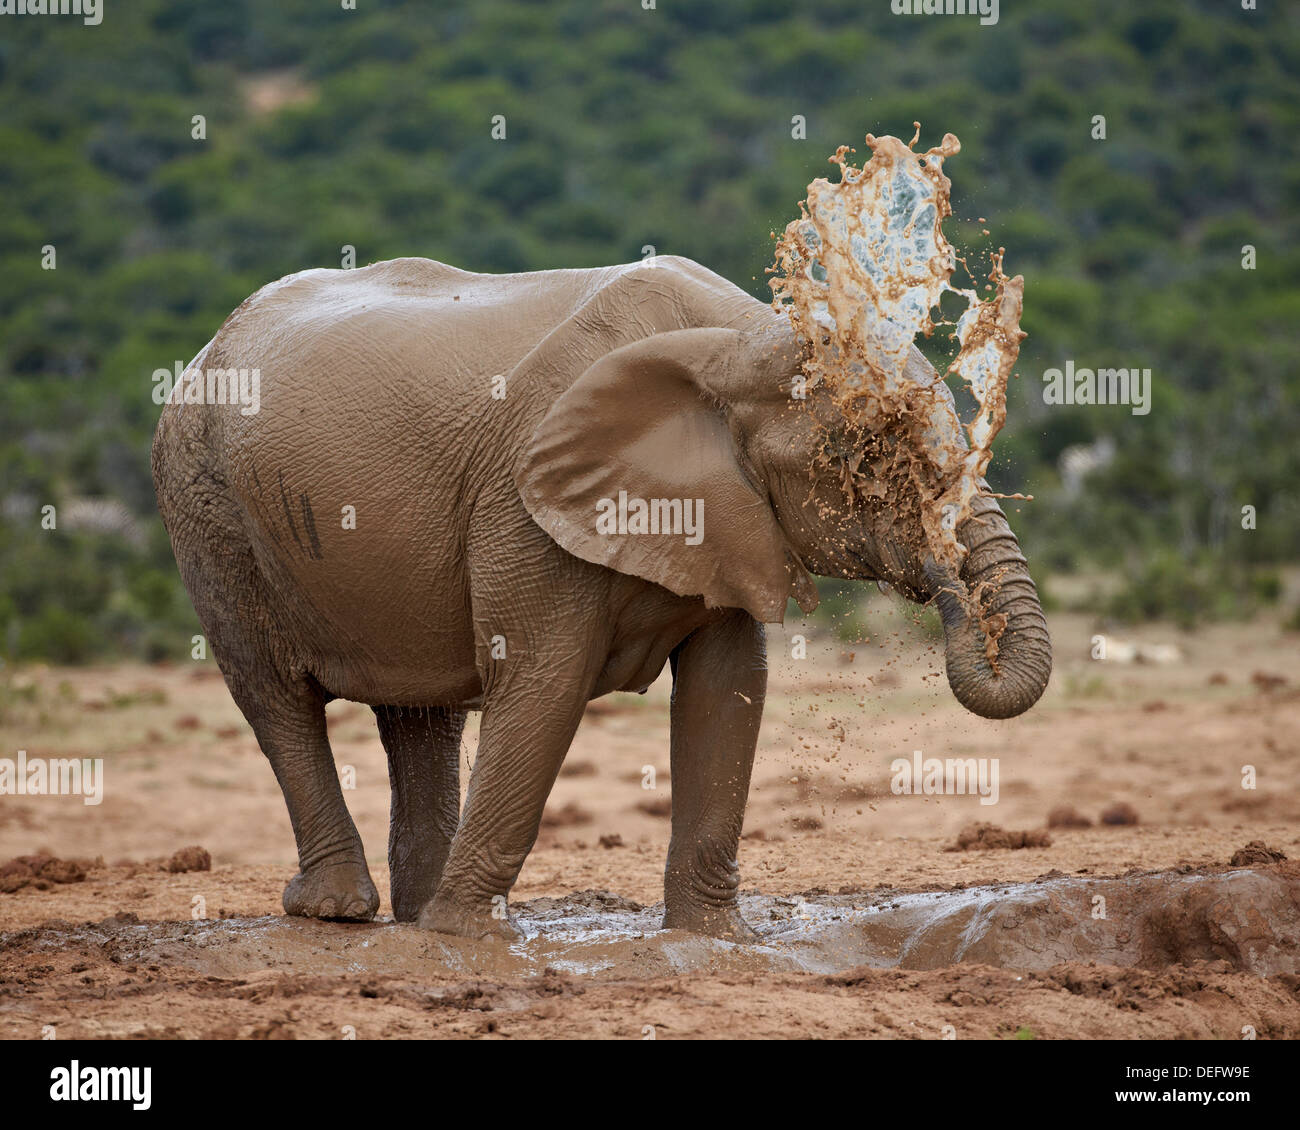 Femelle éléphant africain (Loxodonta africana) bain de boue, l'Addo Elephant National Park, Afrique du Sud, l'Afrique Banque D'Images